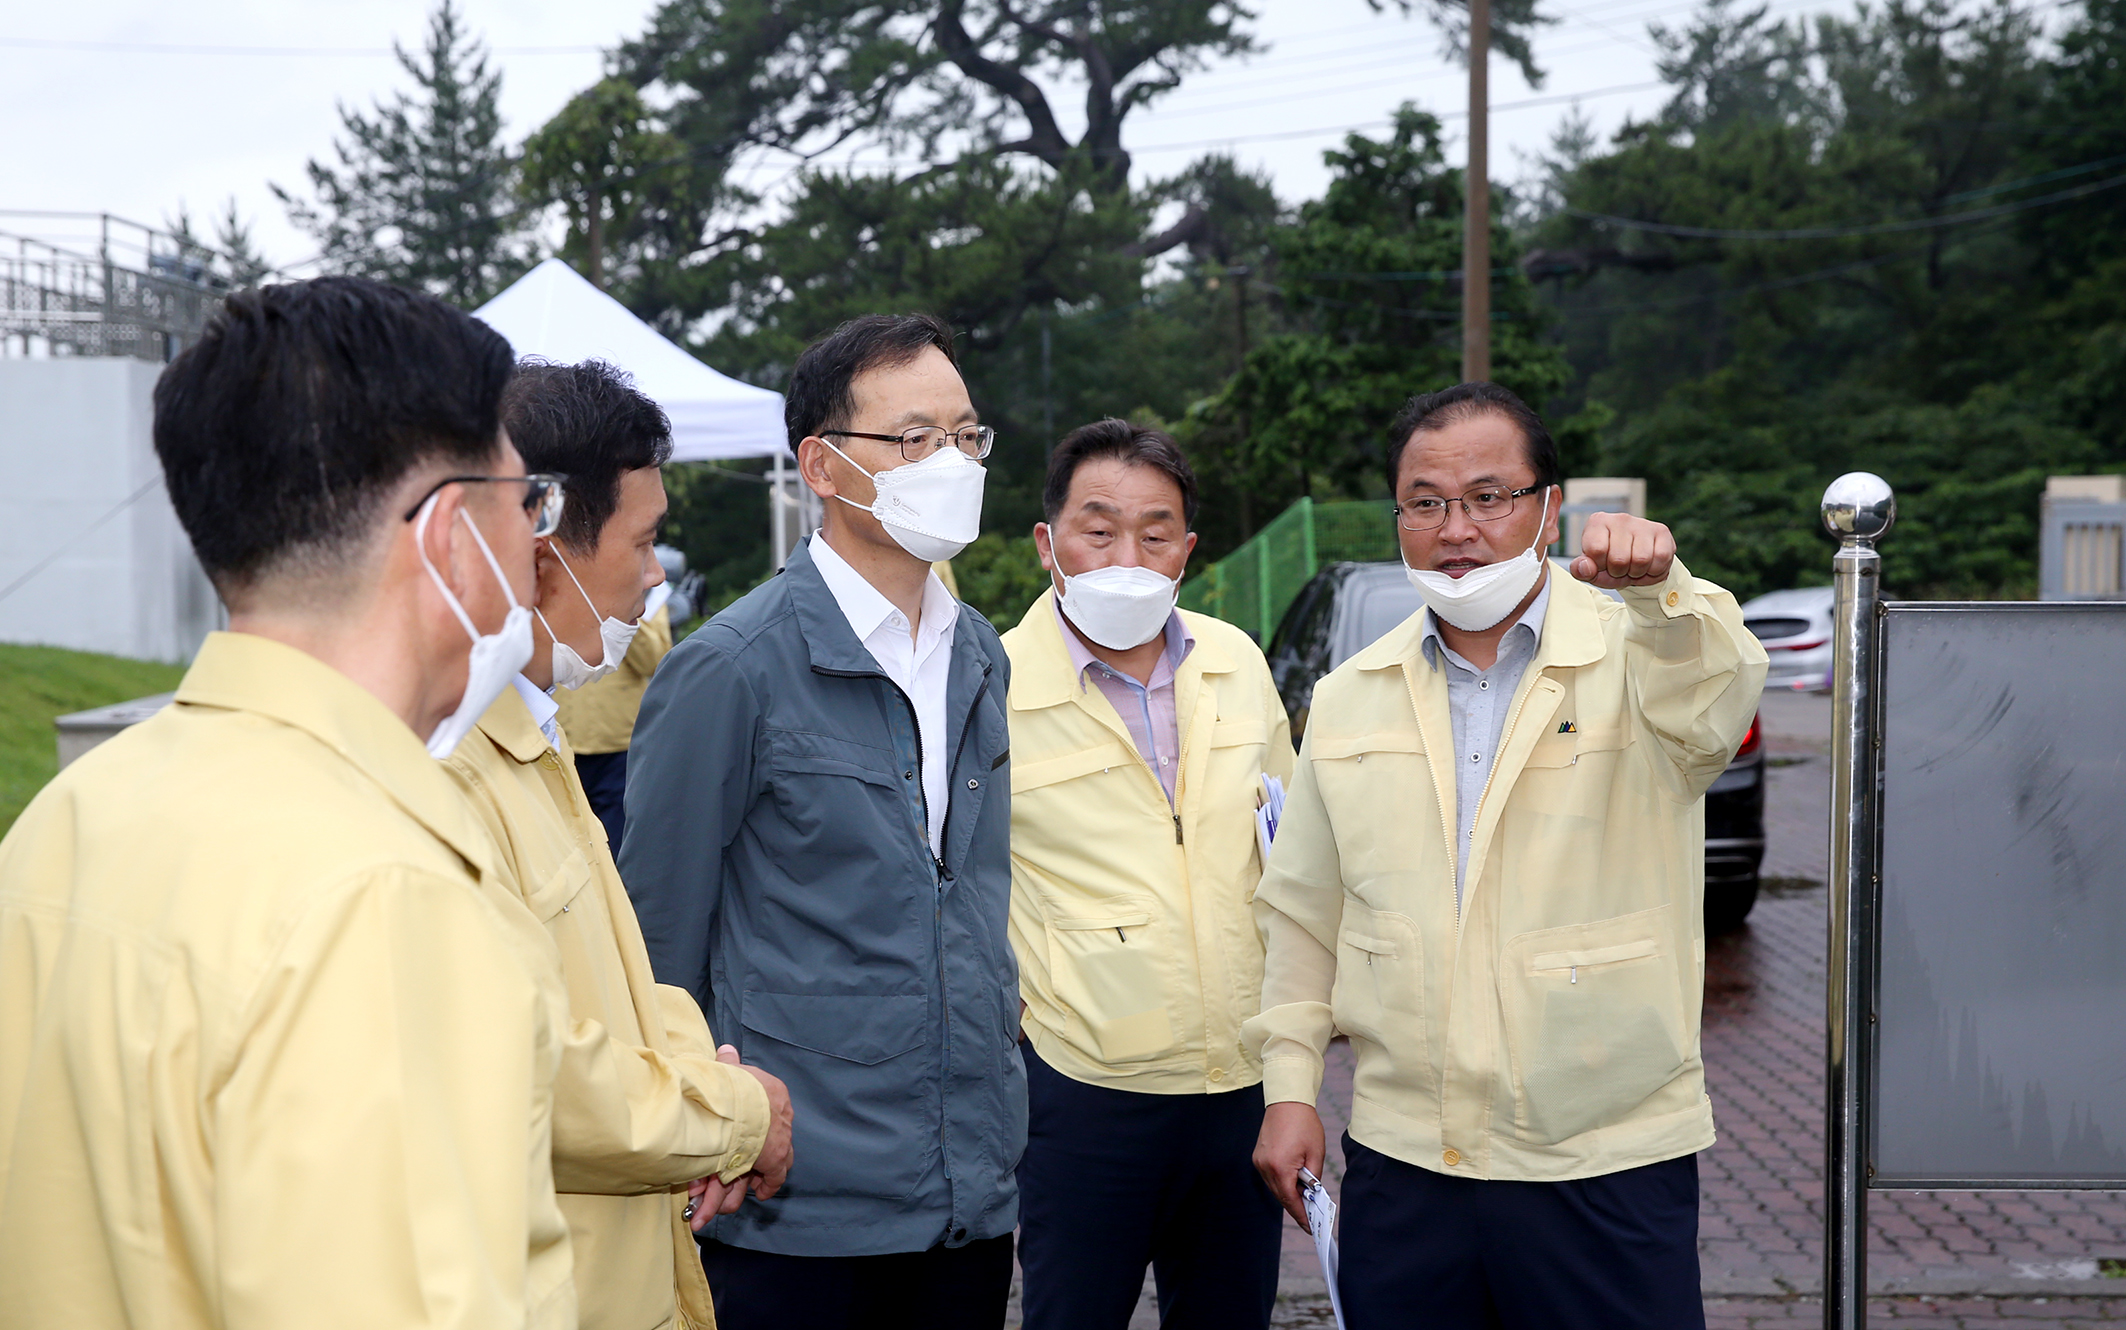 수돗물 유충발생 관련 행정부지사님 정수장 방문5